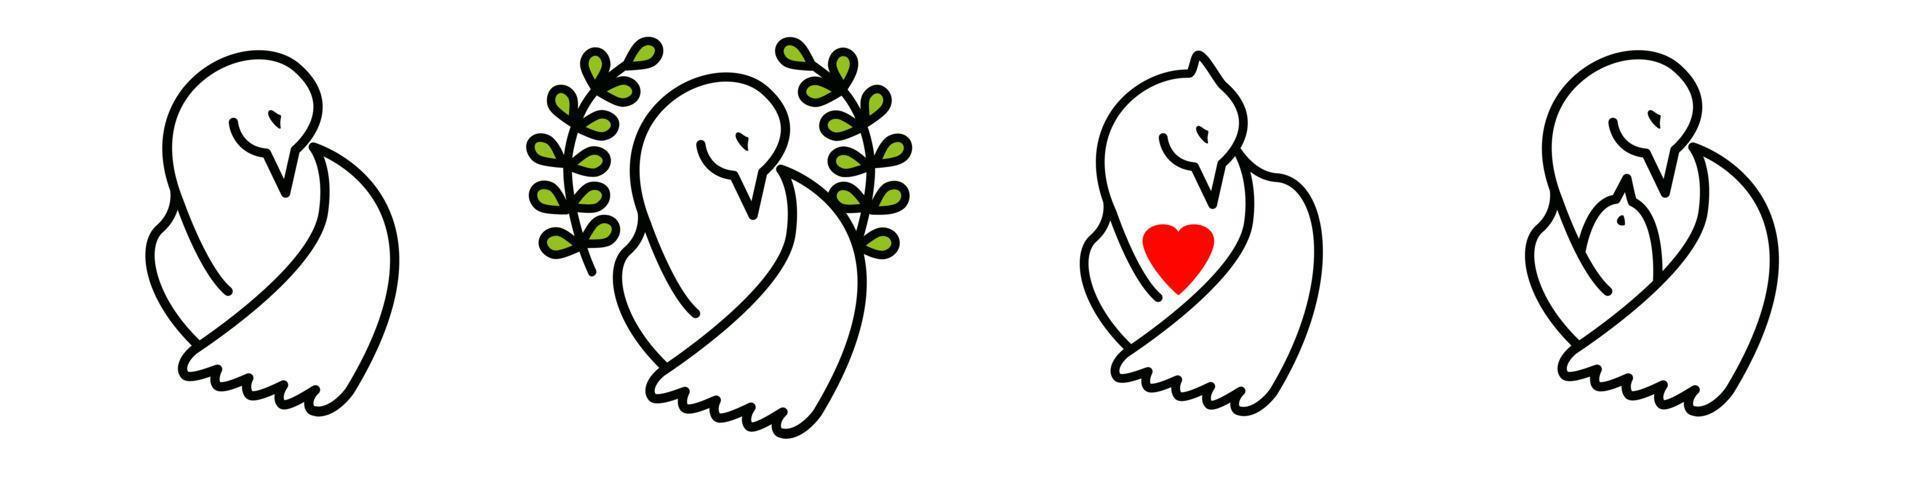 vector reeks van duif van de wereld, duif met een rood hart, een vogel met een kuiken. groep van verschillend concepten geïsoleerd Aan wit achtergrond. symbolen van vrede, genade, wederzijds bijstand, liefde, moederschap